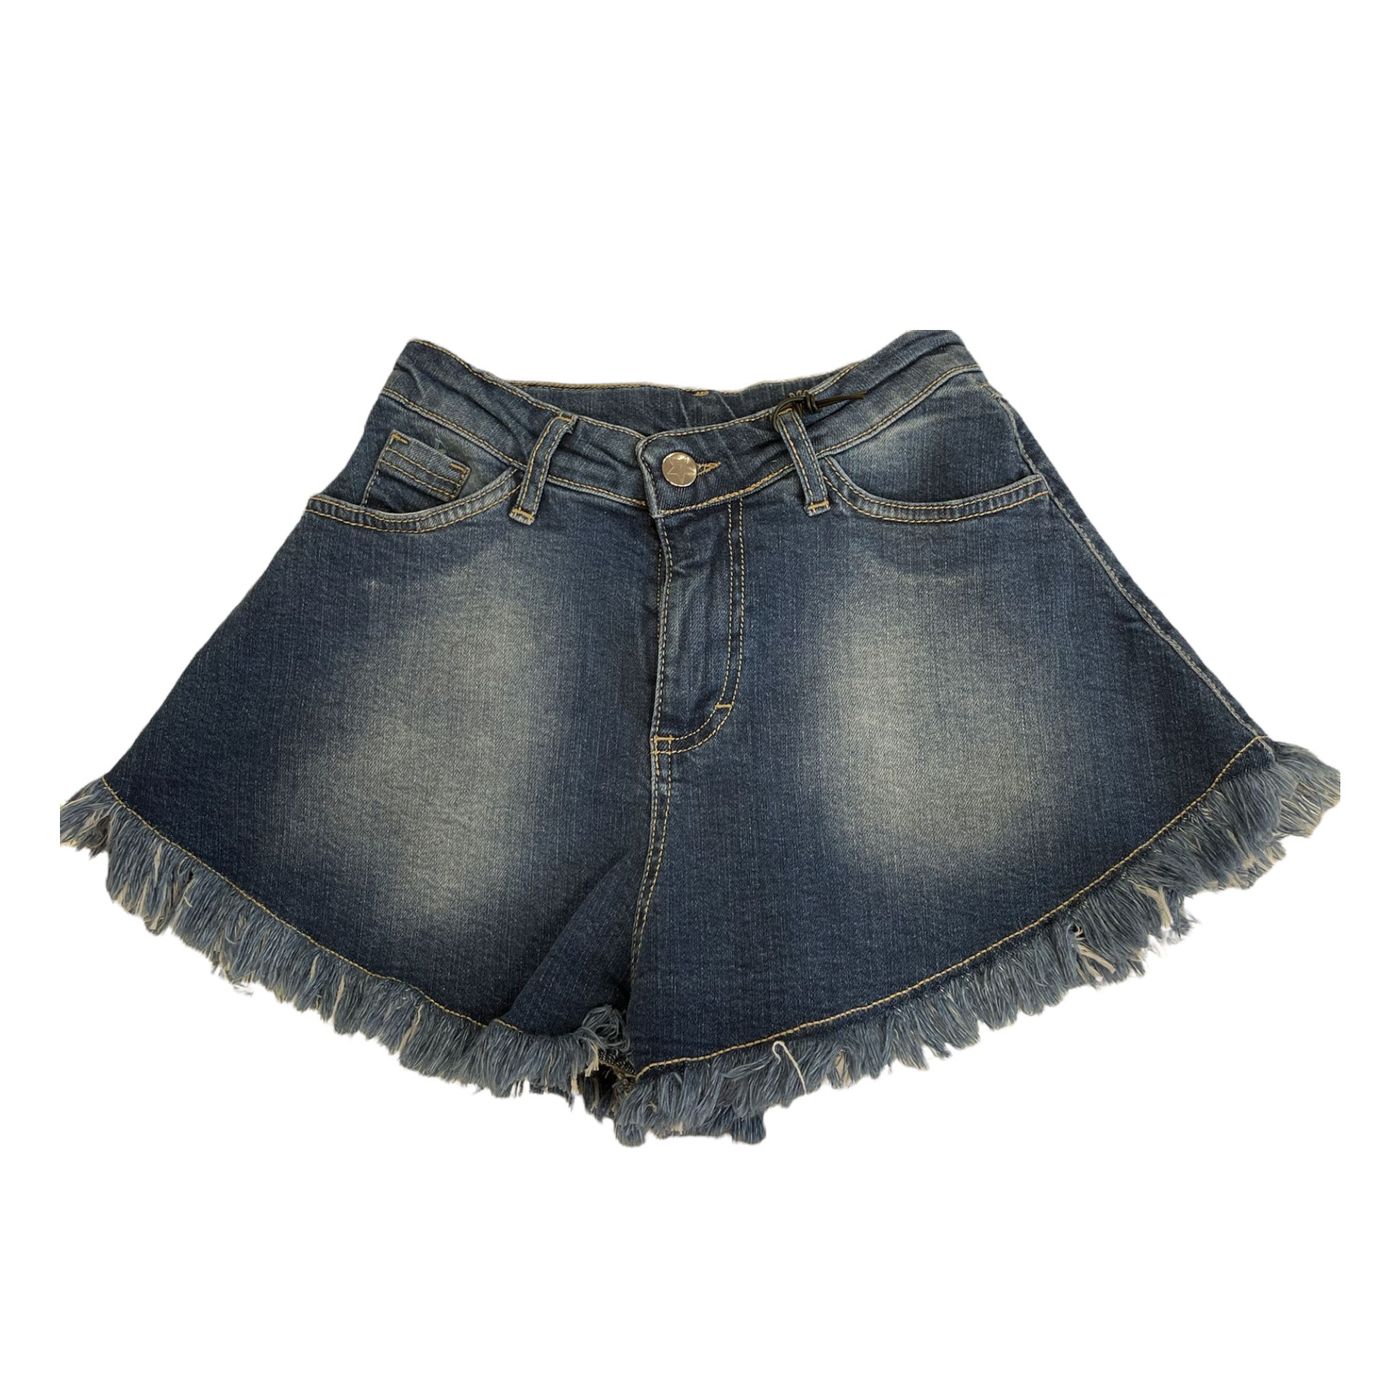 022406 - Shorts - Shop Art Girl